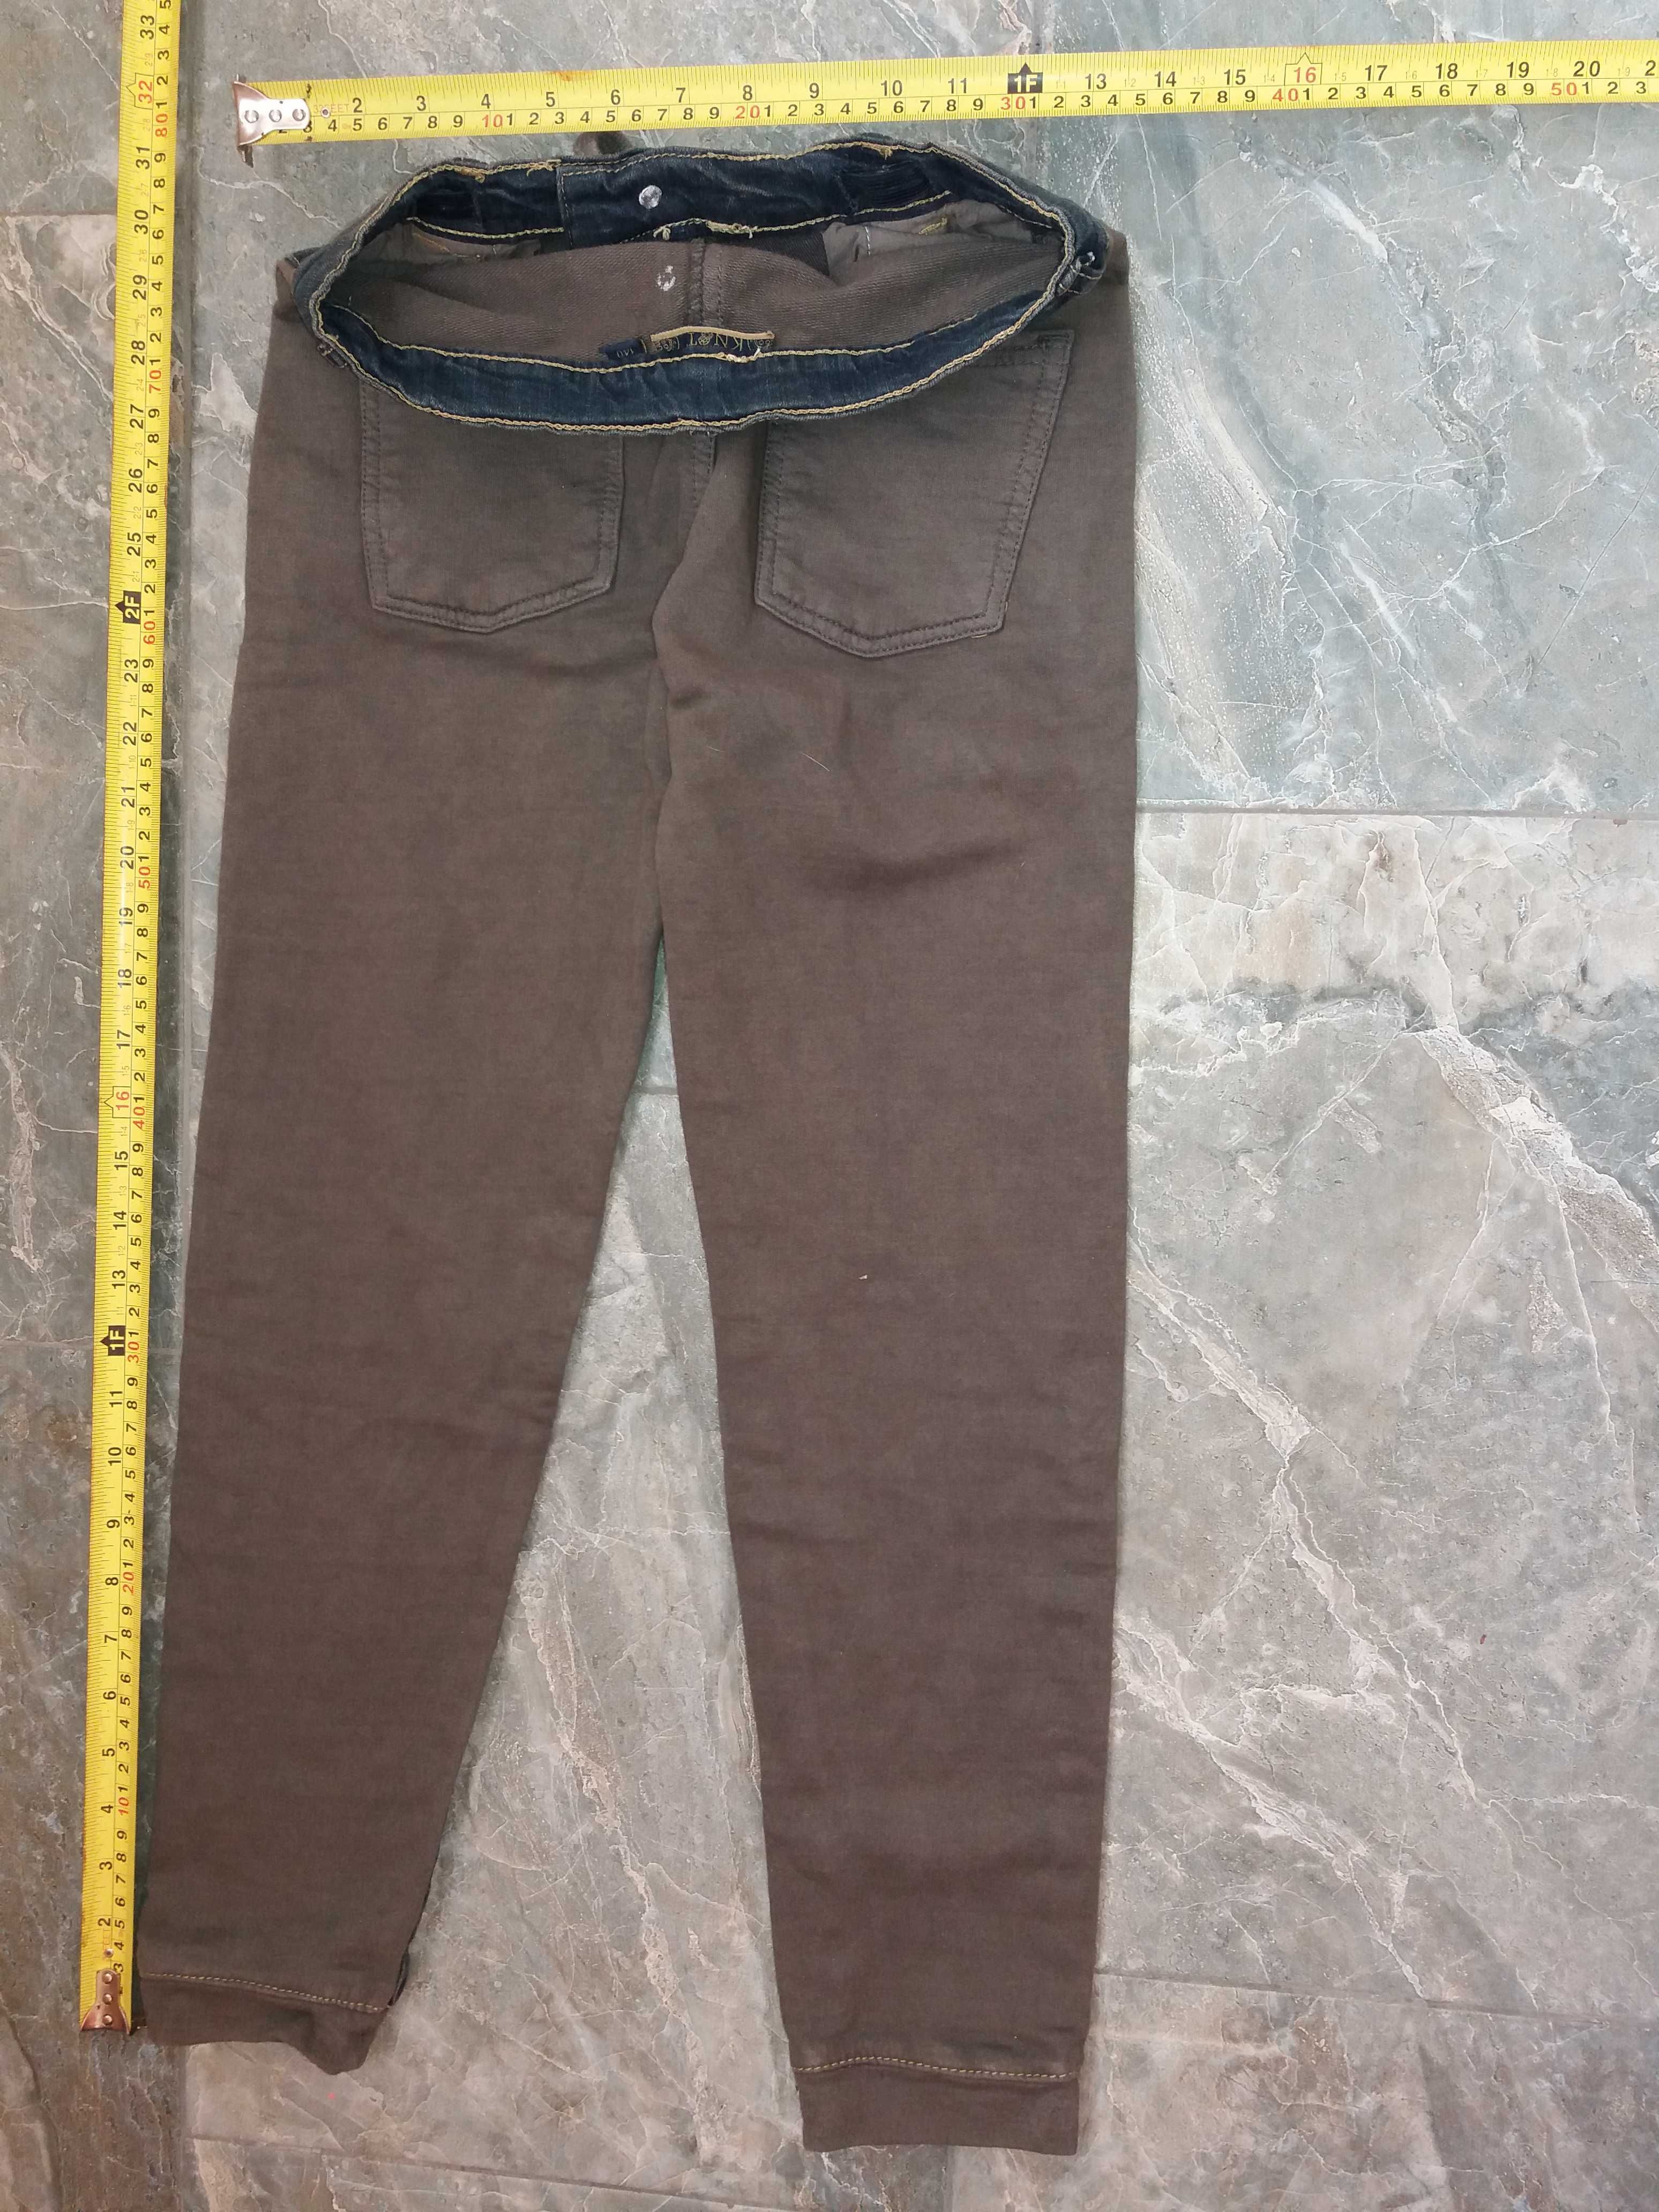 Pantaloni blugi William Delvin 124cm/90cm. Pret 20 lei.